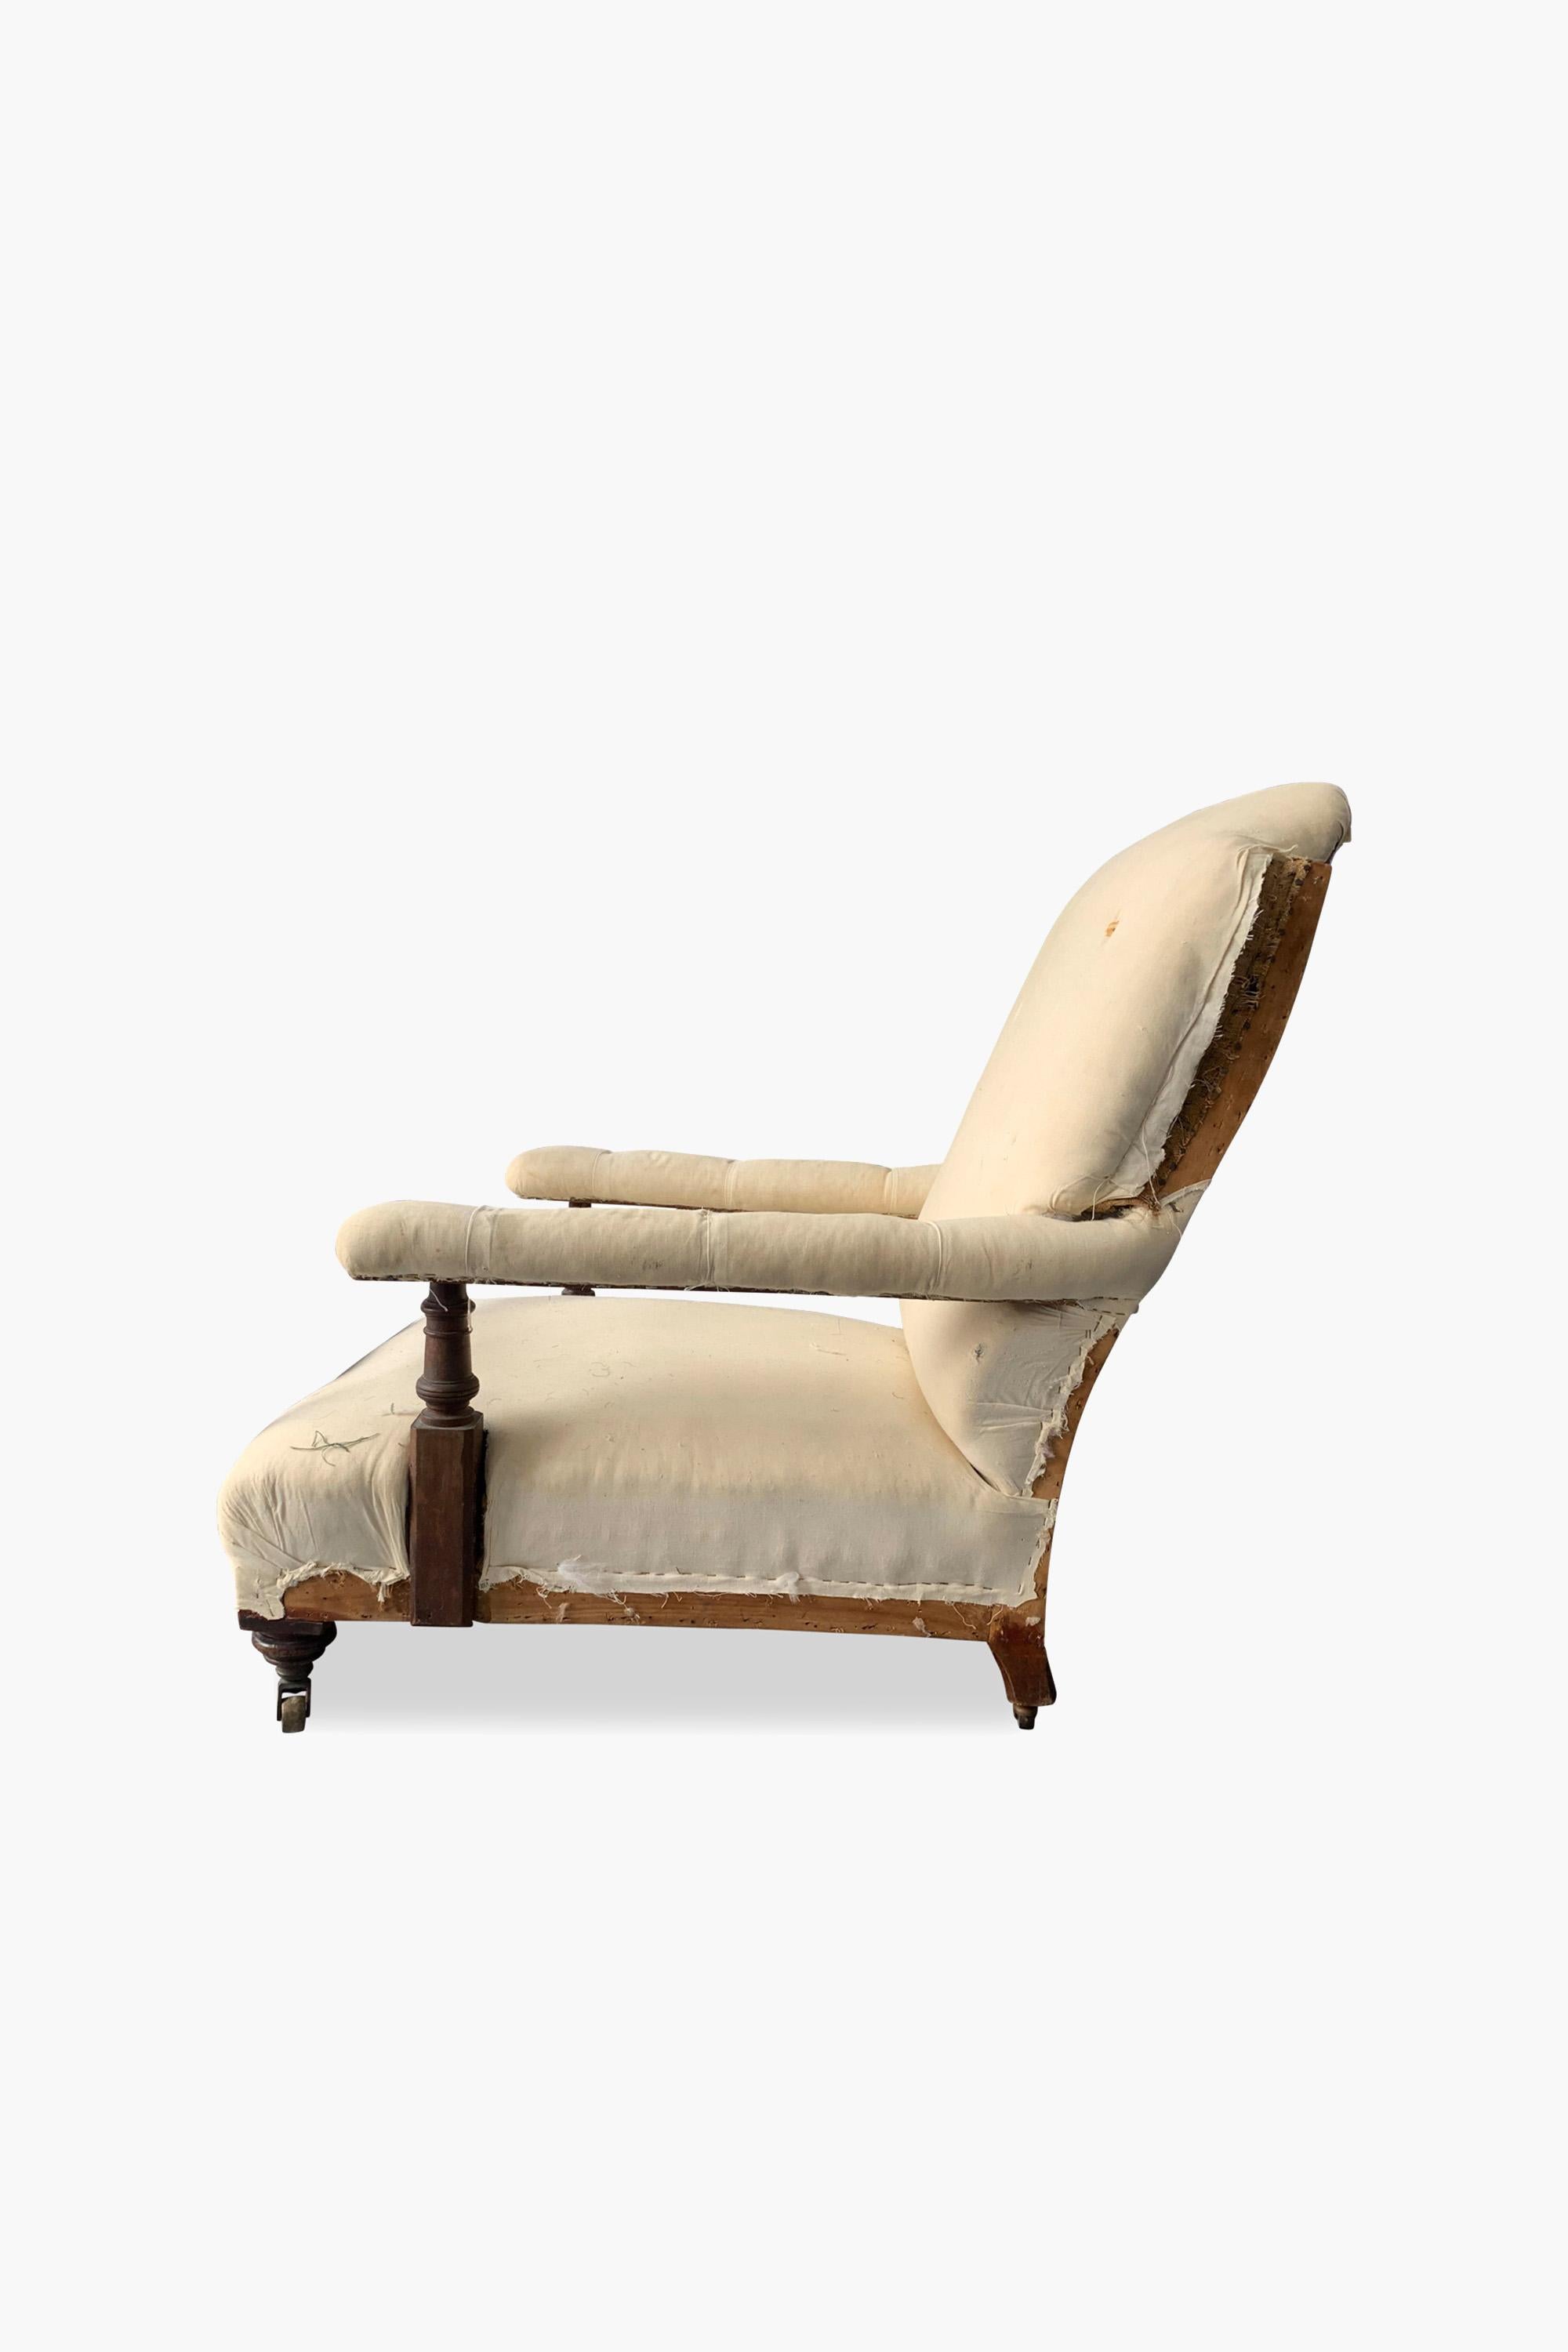 Grand fauteuil ouvert victorien par Maple & Co.

Un grand fauteuil ouvert rembourré de style victorien, estampillé 